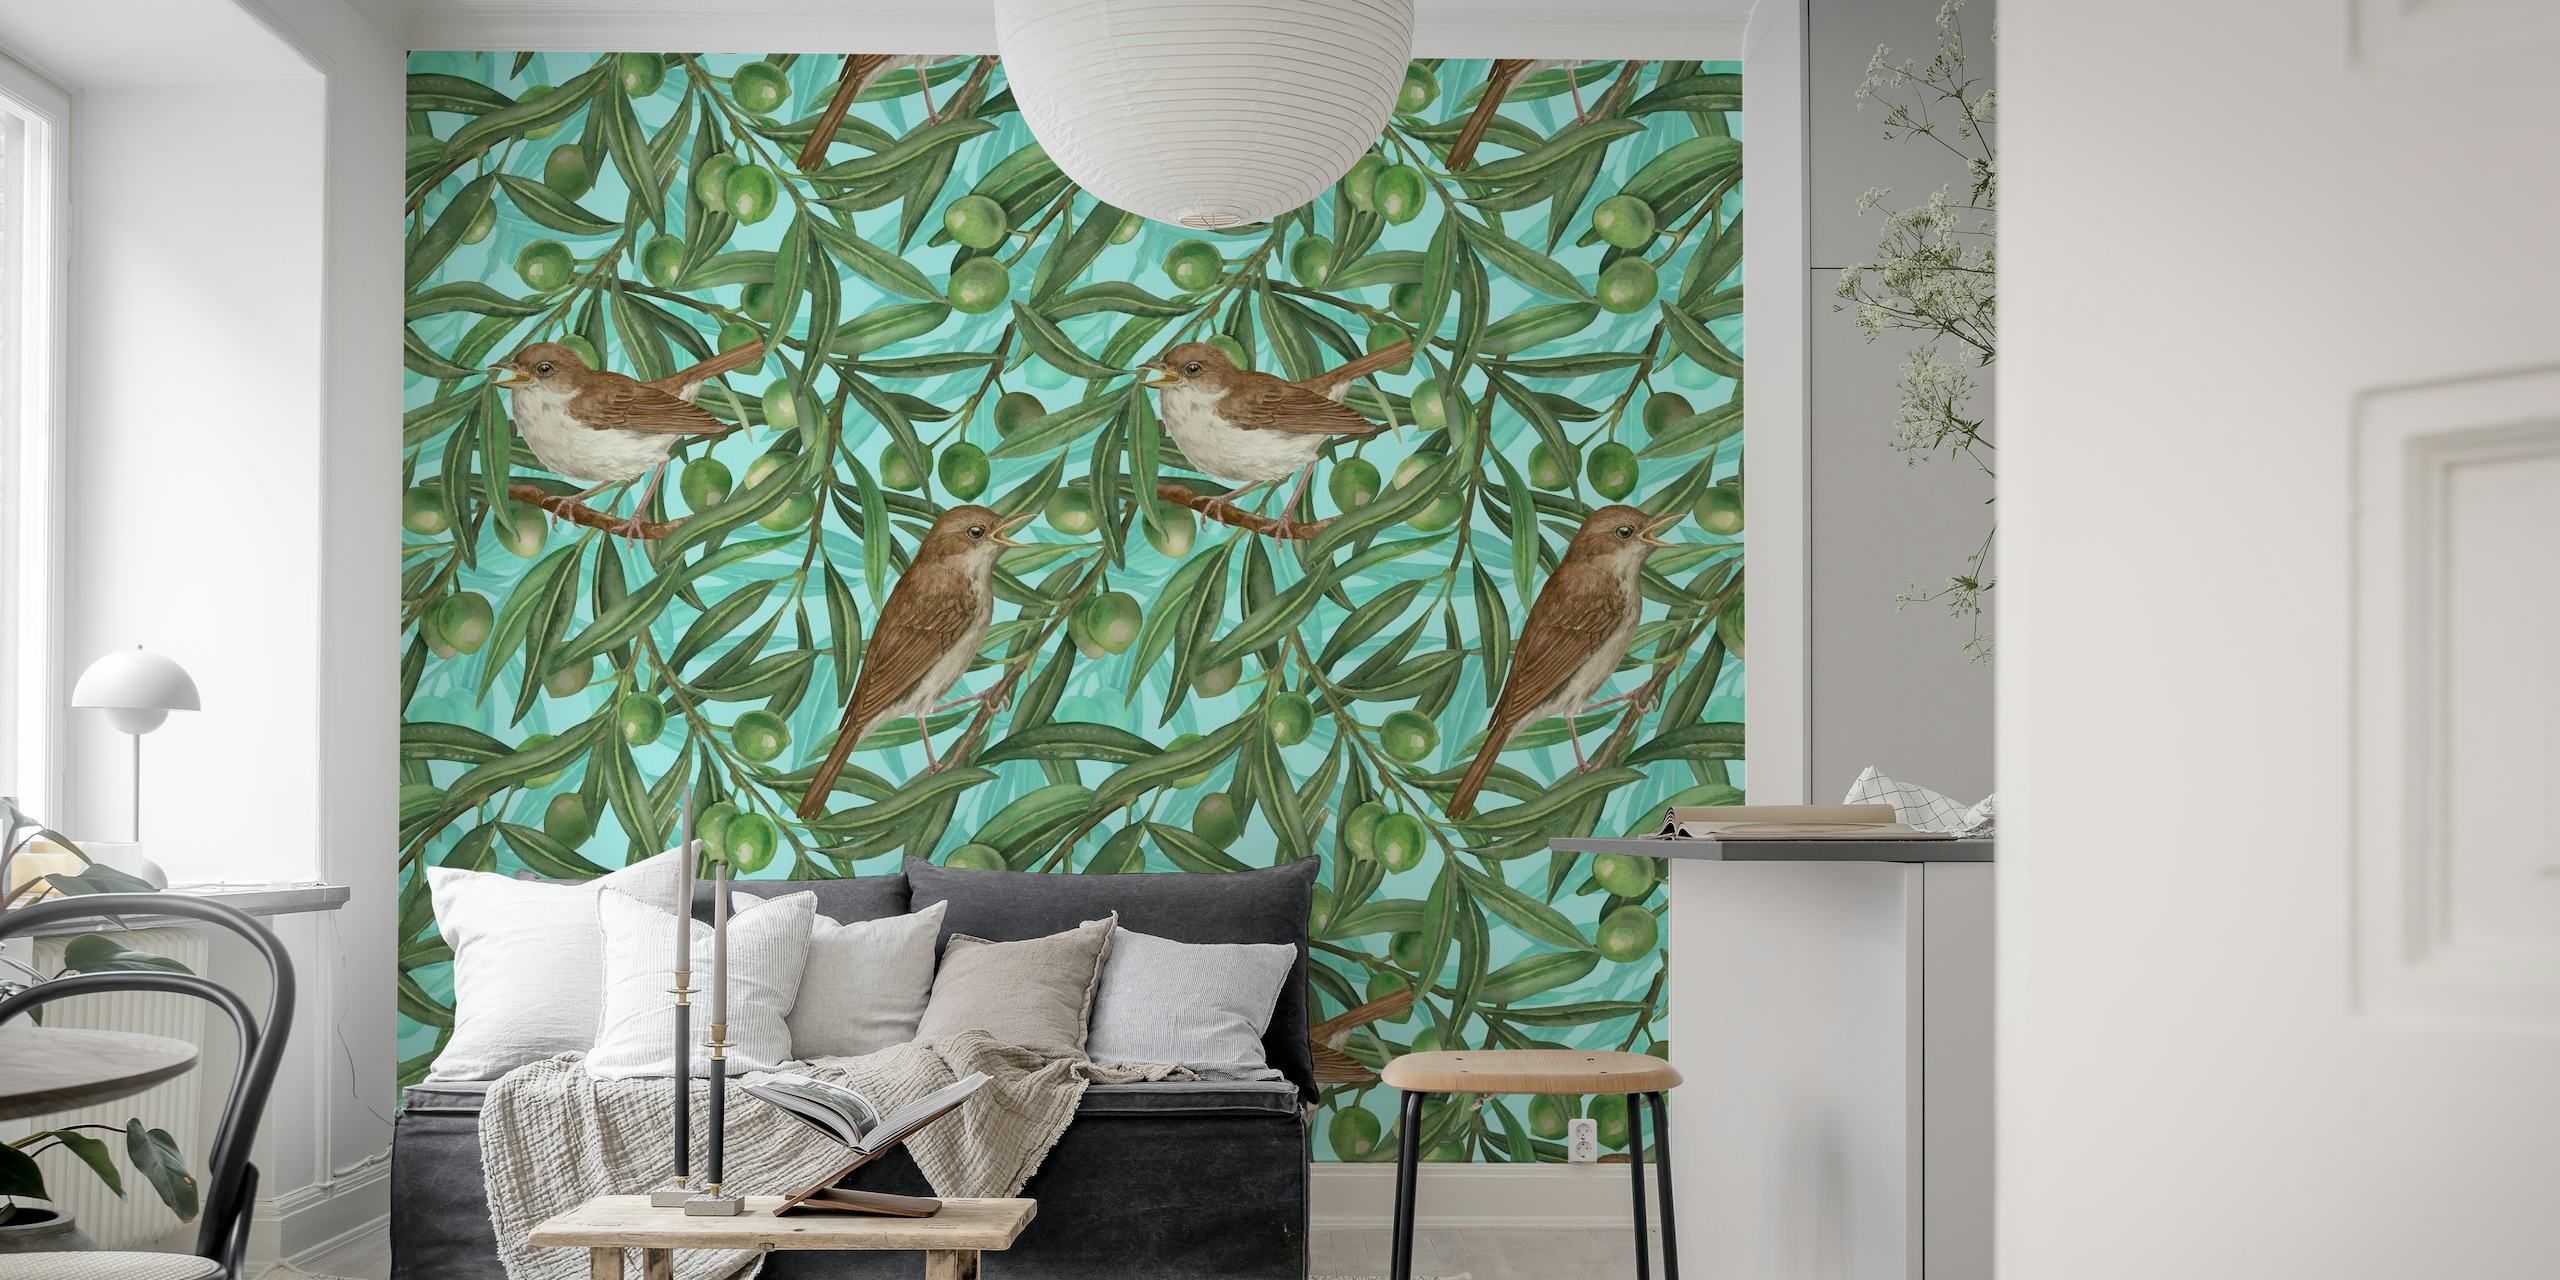 Illustratives Wandgemälde mit Vögeln, die in Olivenbäumen mit reifen Oliven sitzen